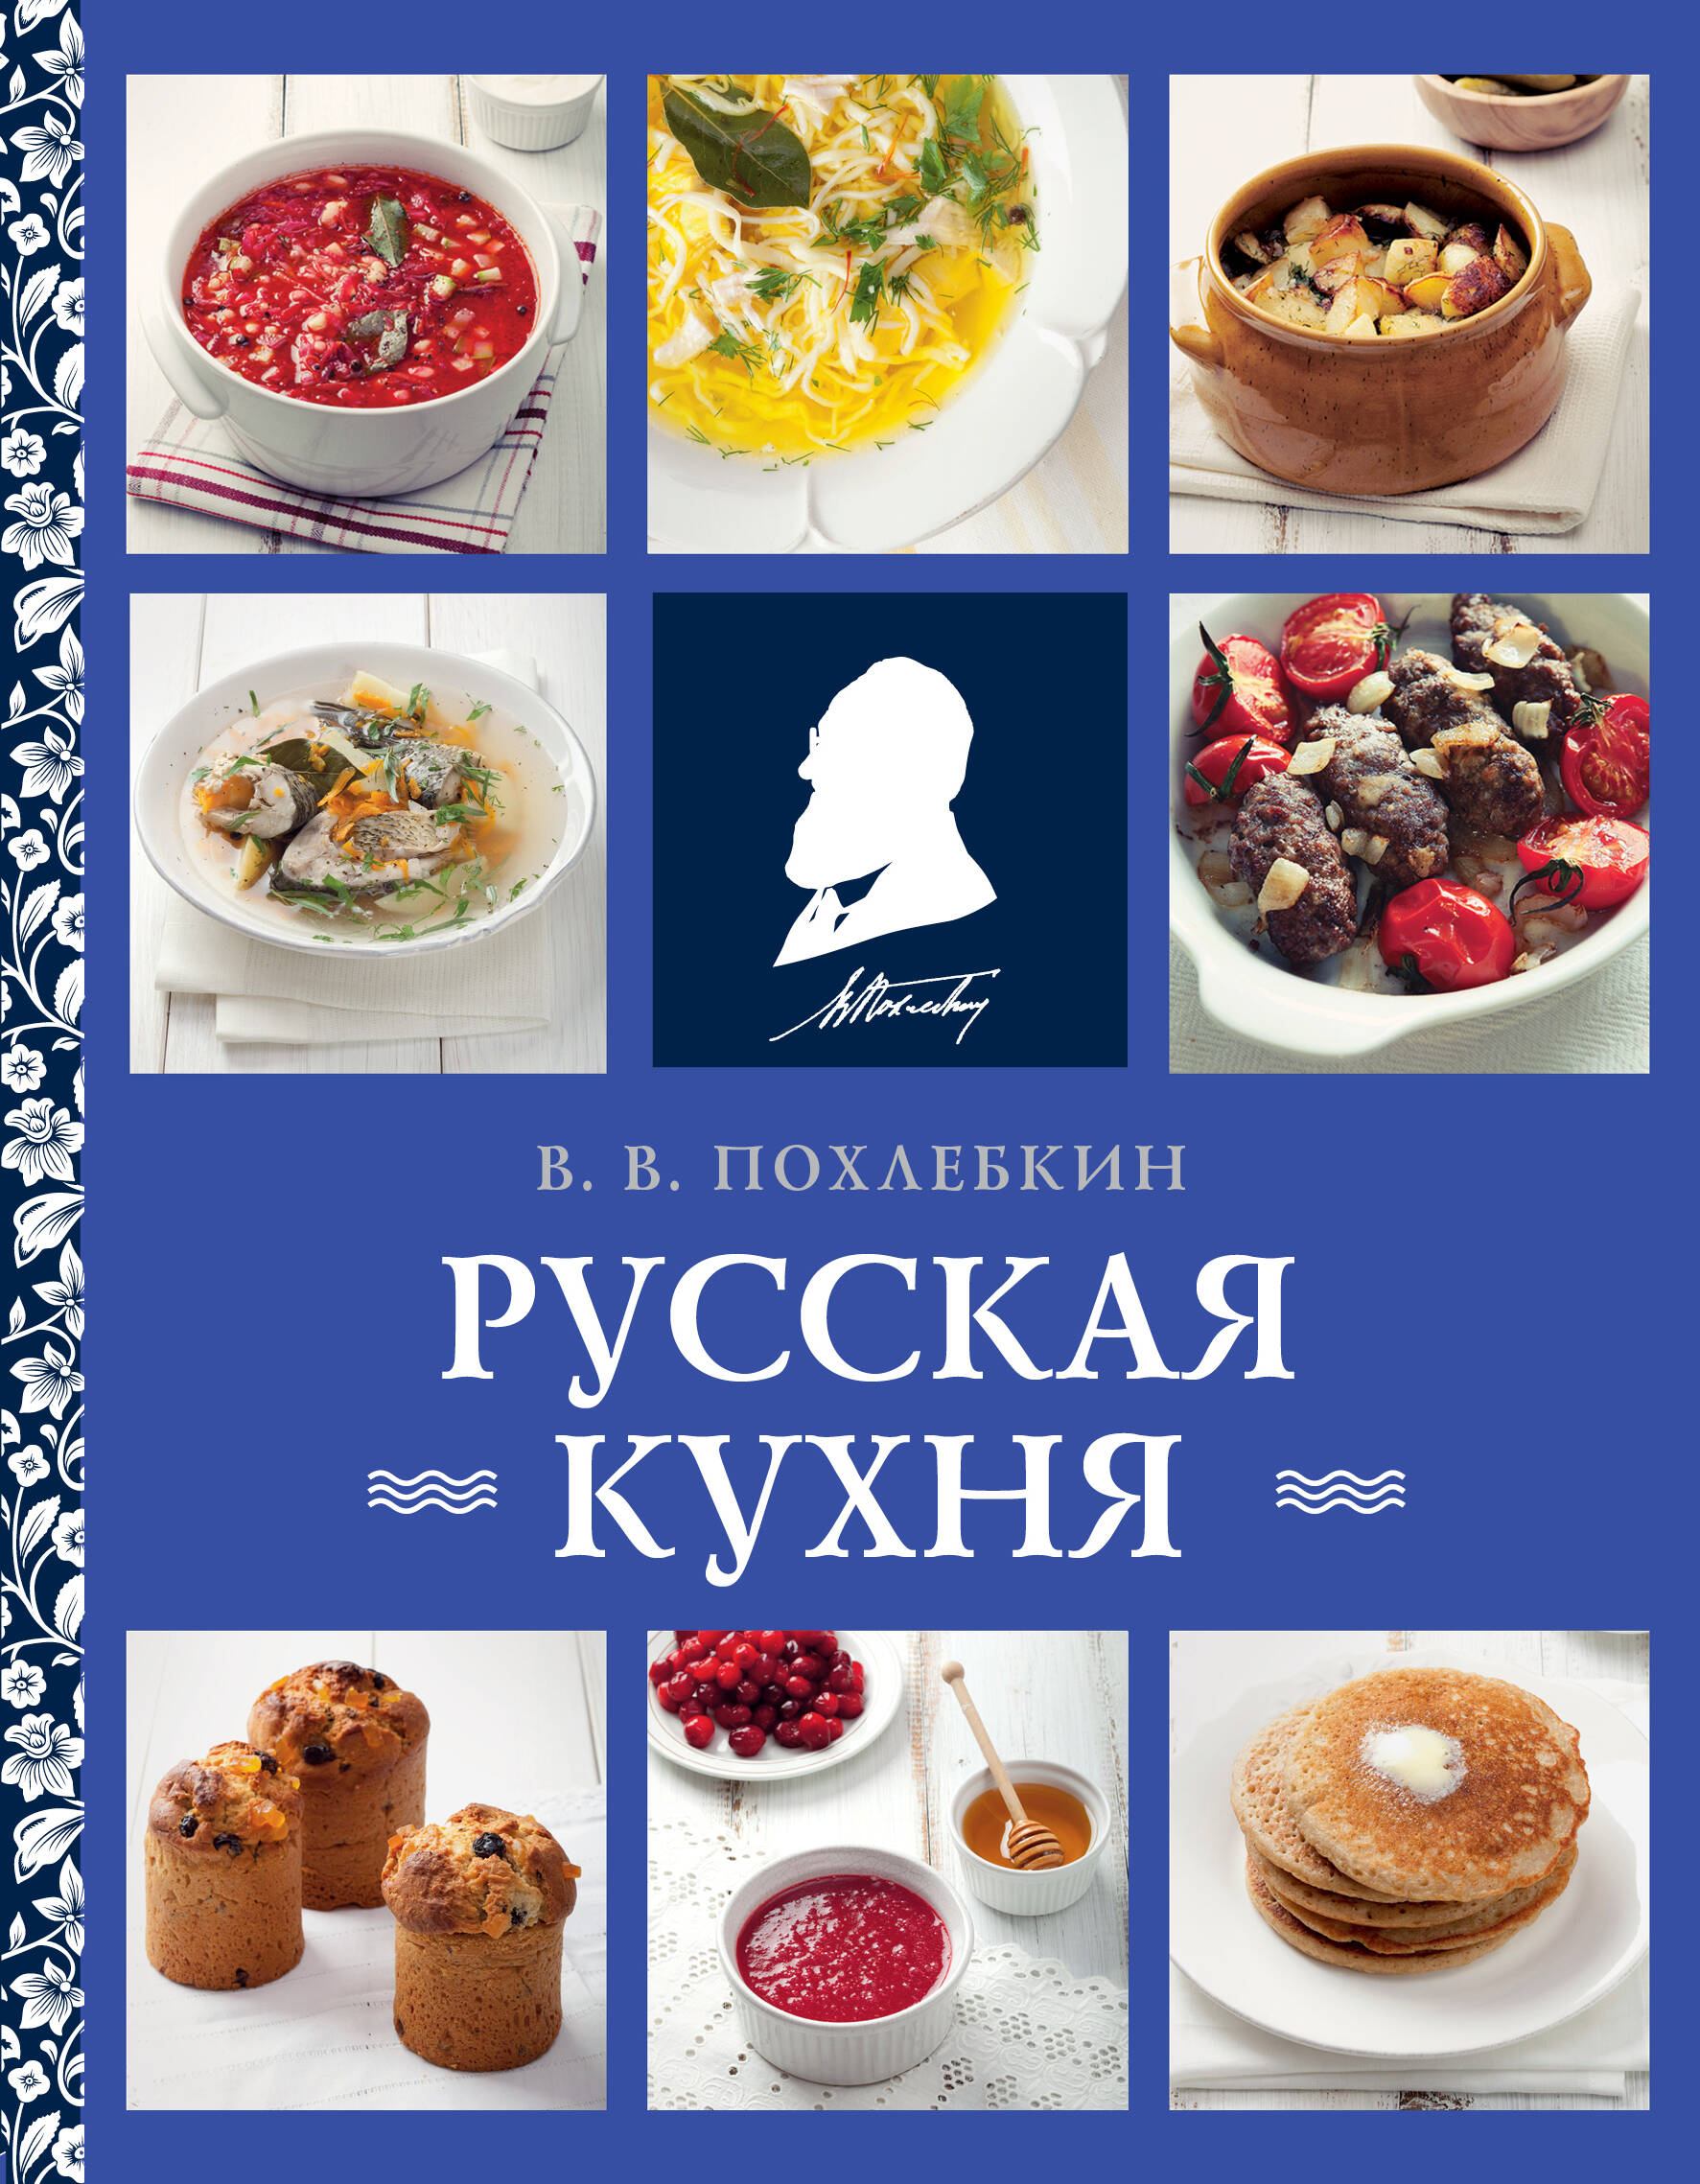 Русская кухня альбом русская кухня